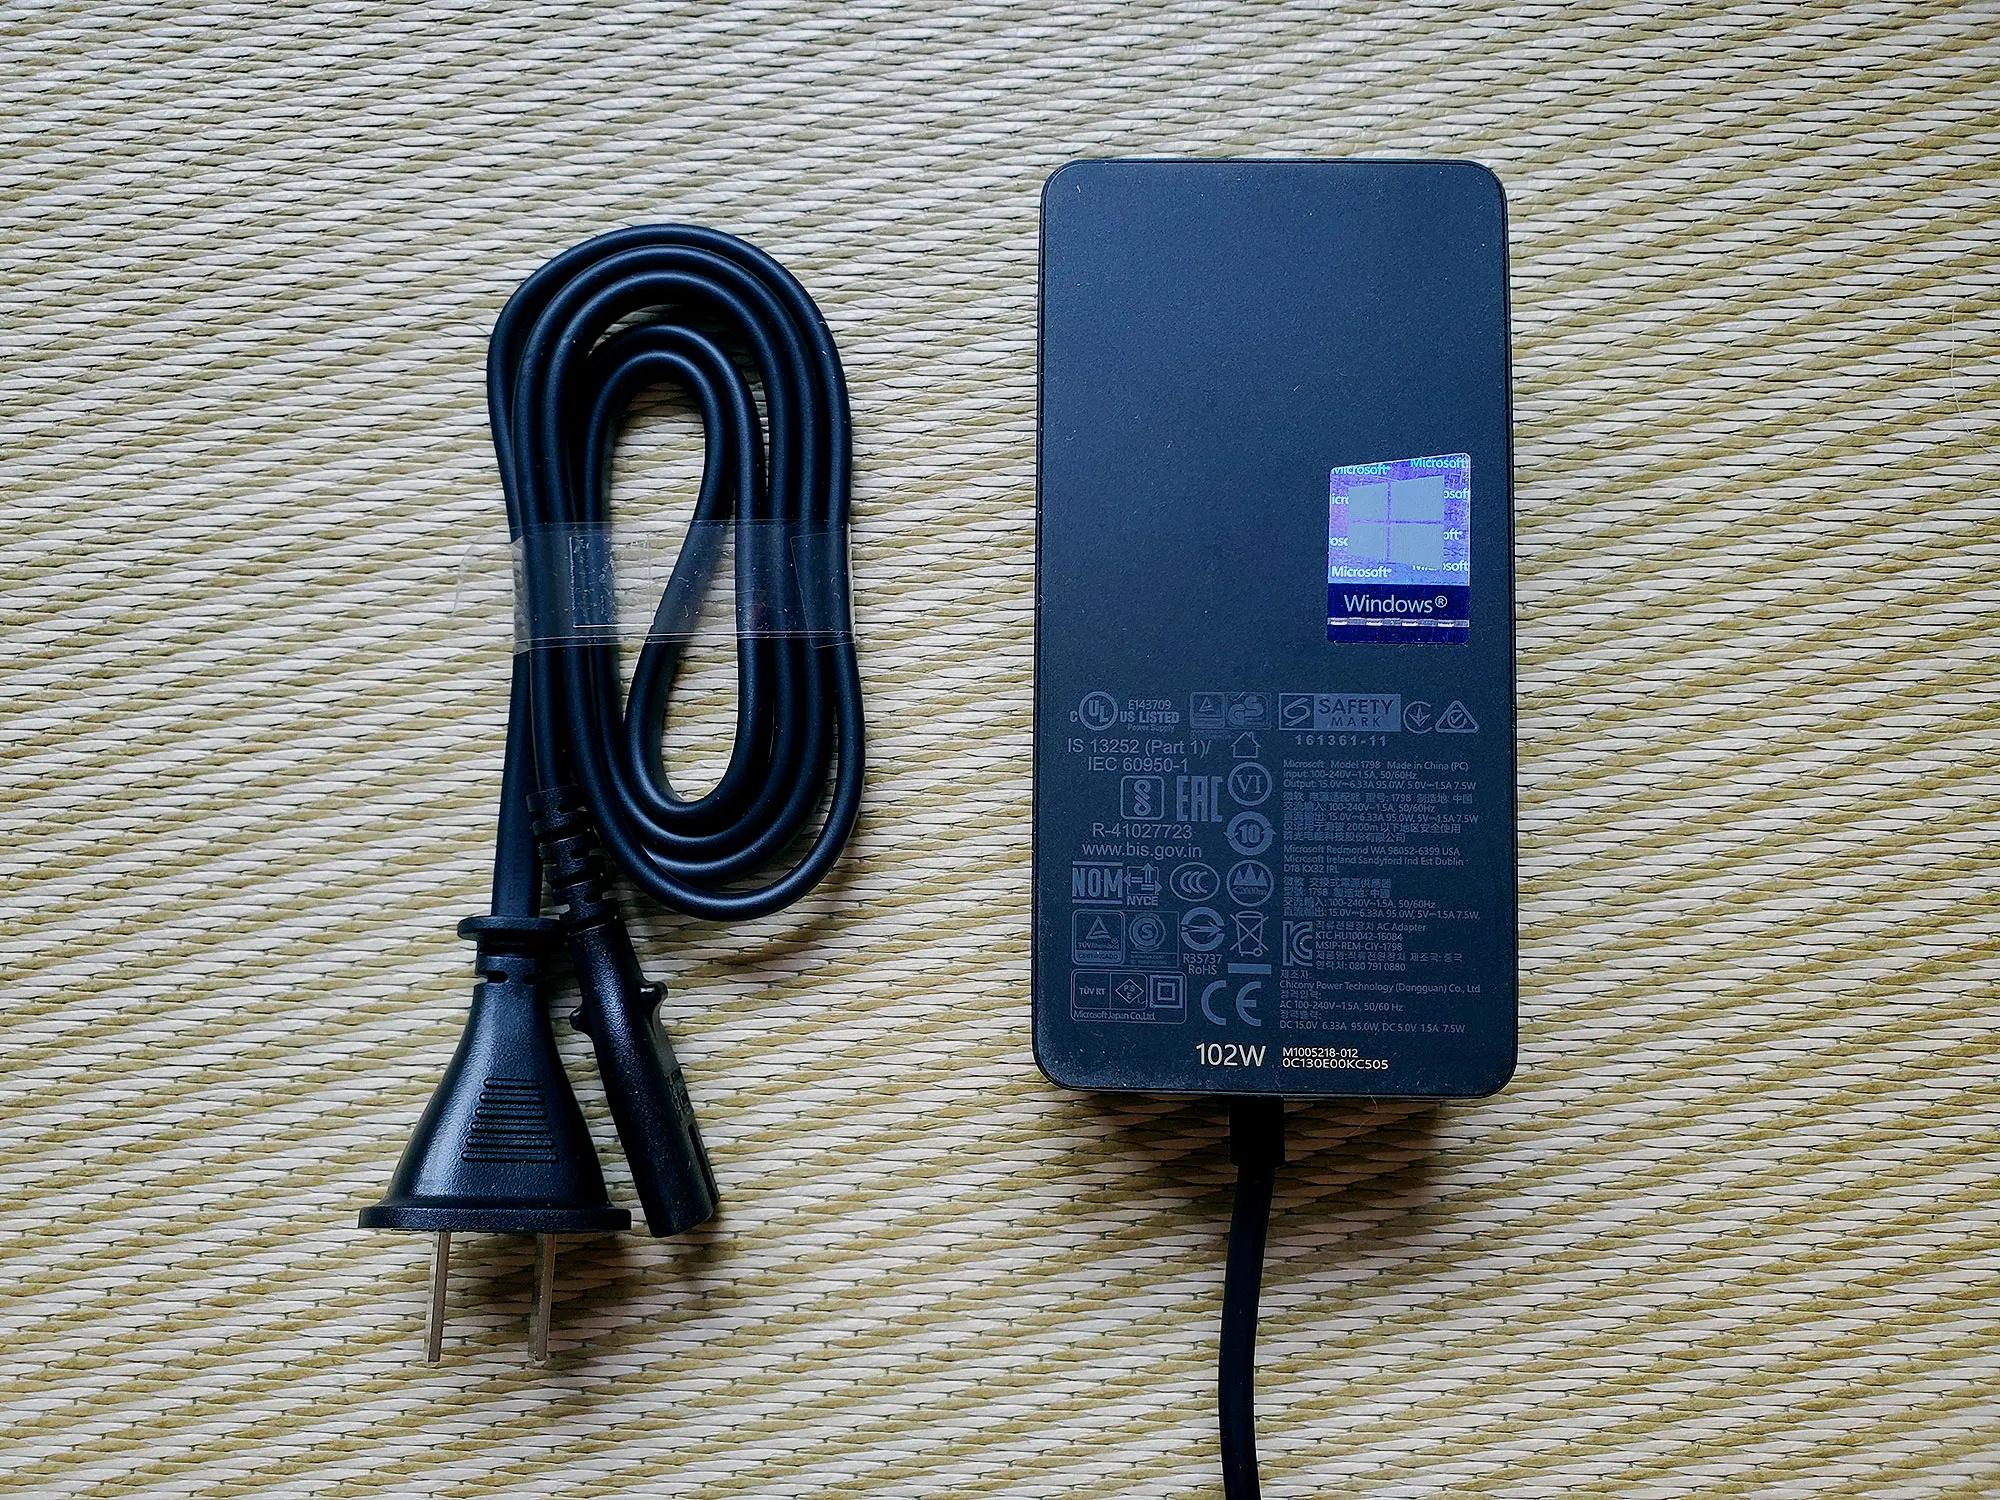 电源适配器上还附带了一个USB接口，方便用户在使用单脑的时候给自己的其他设备如手机等进行充电